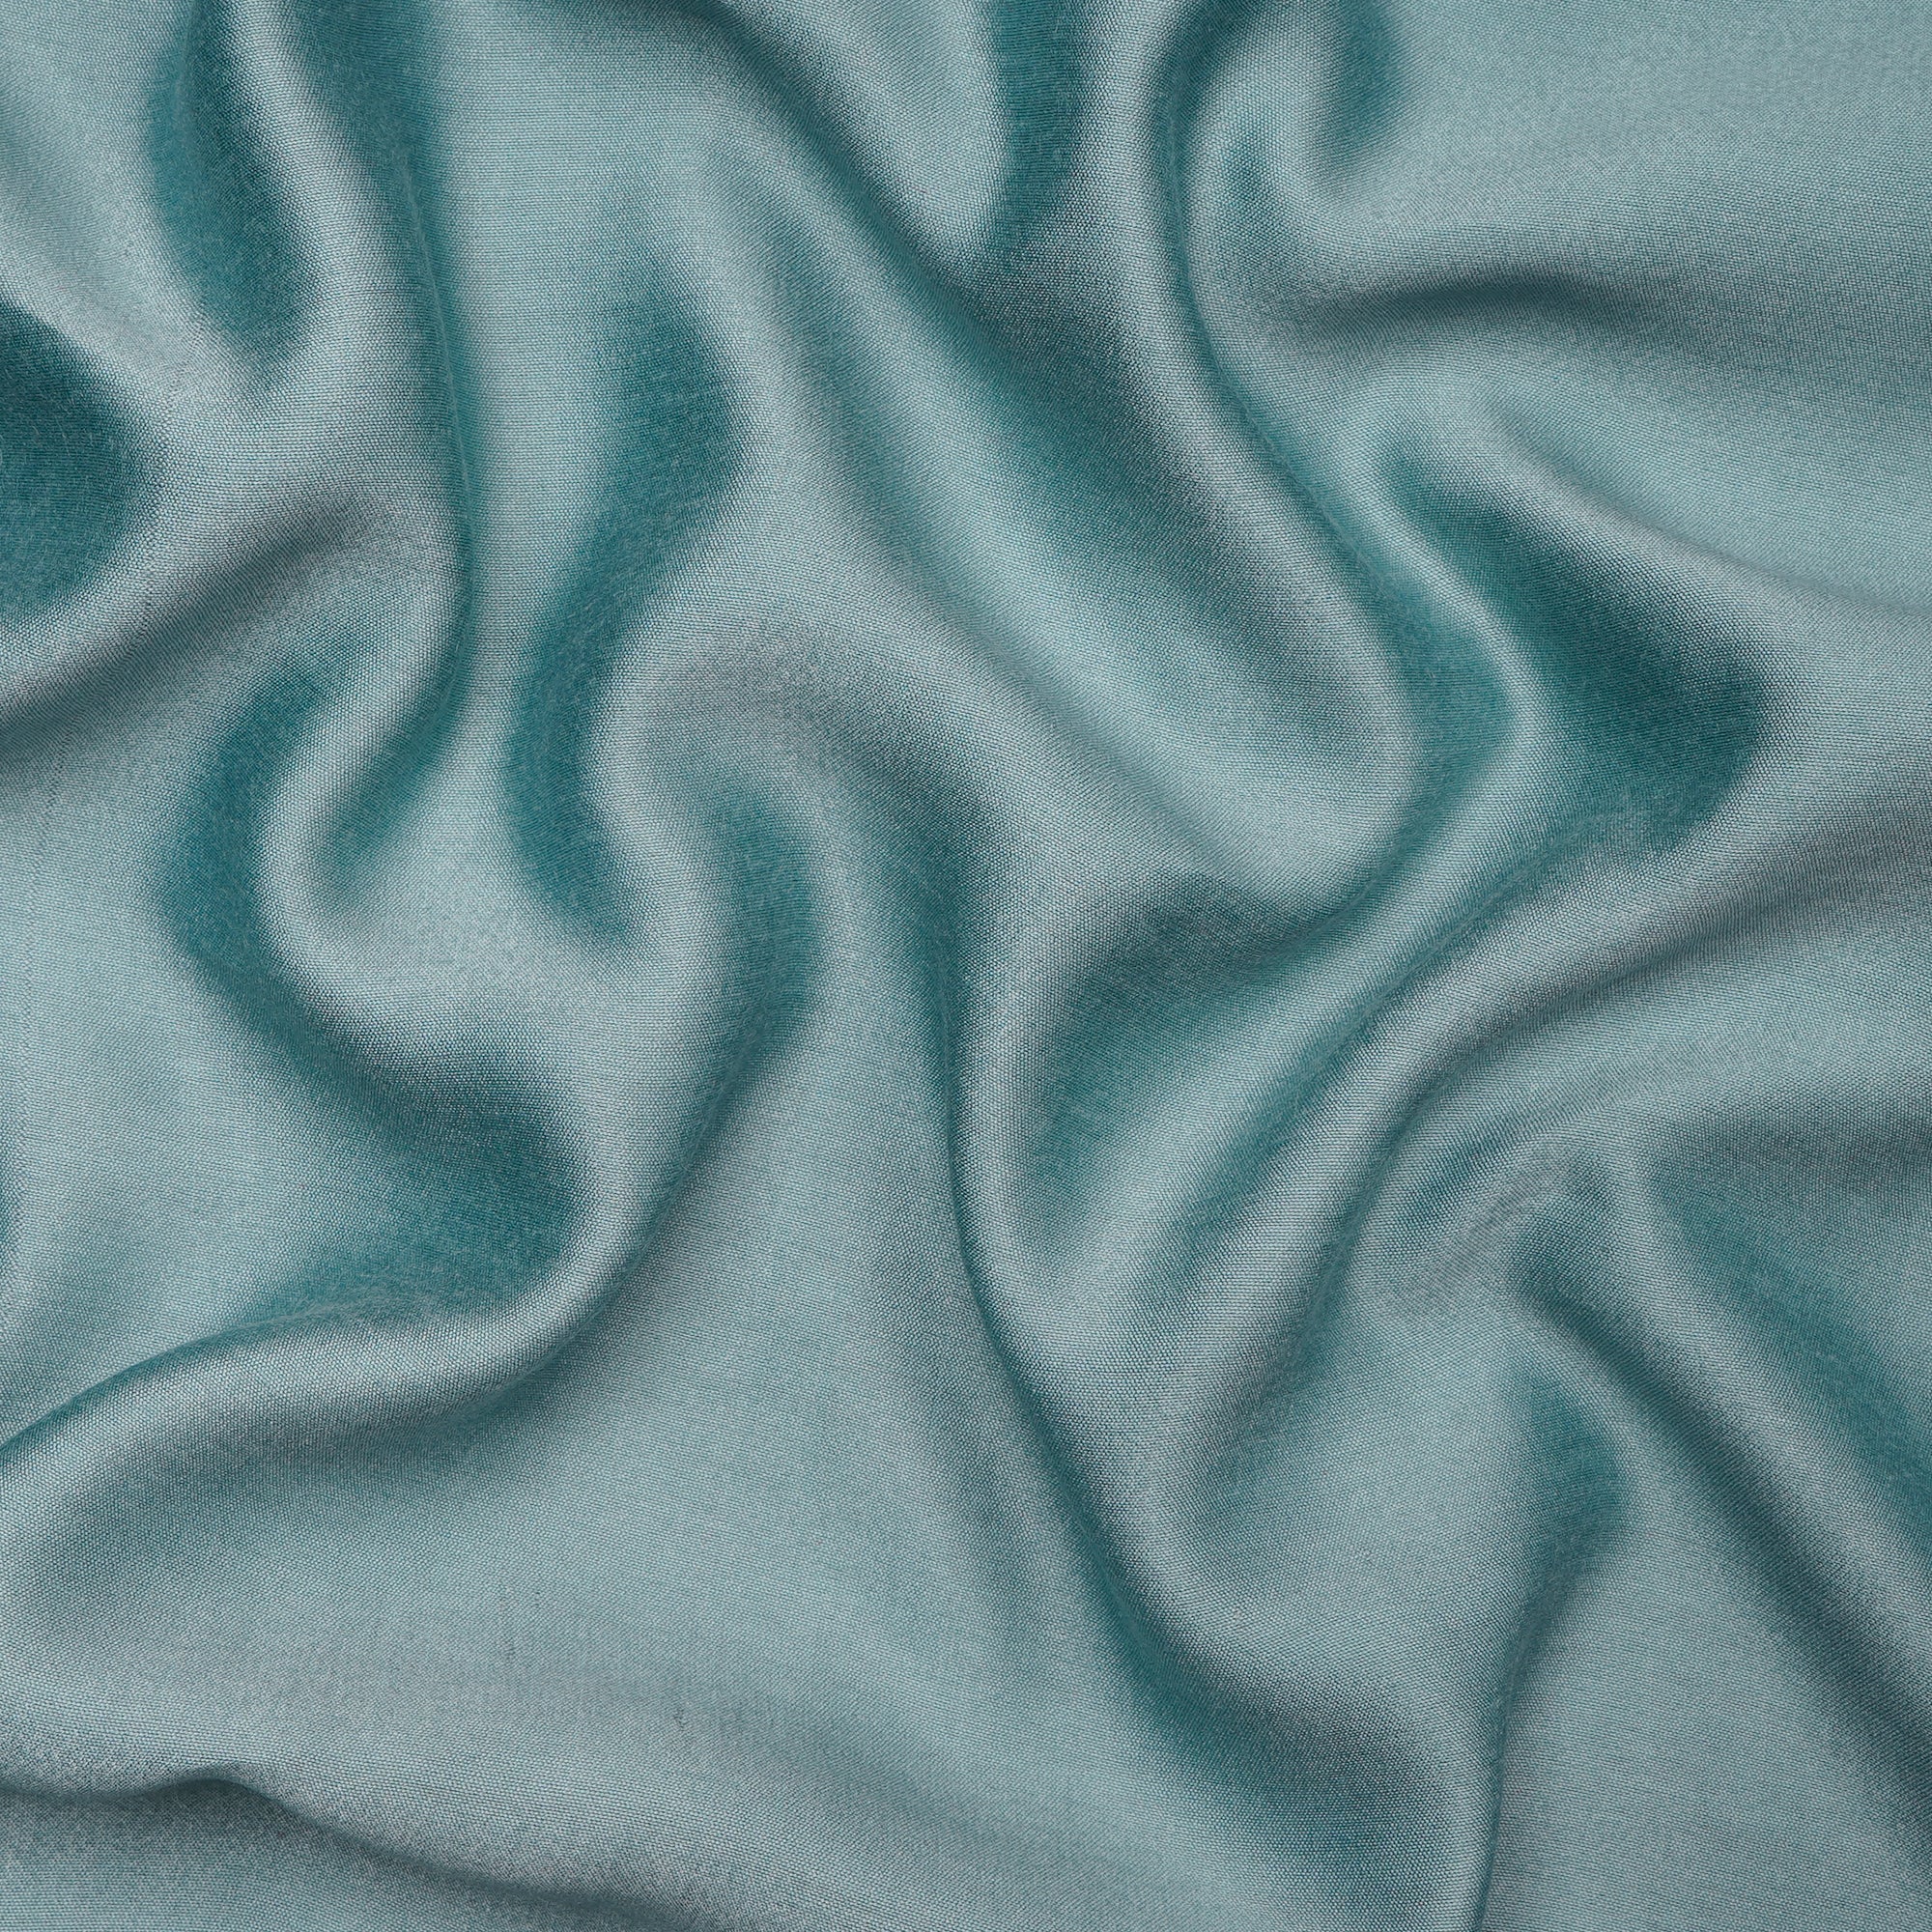 Wasabi Green Viscose Silk Fabric